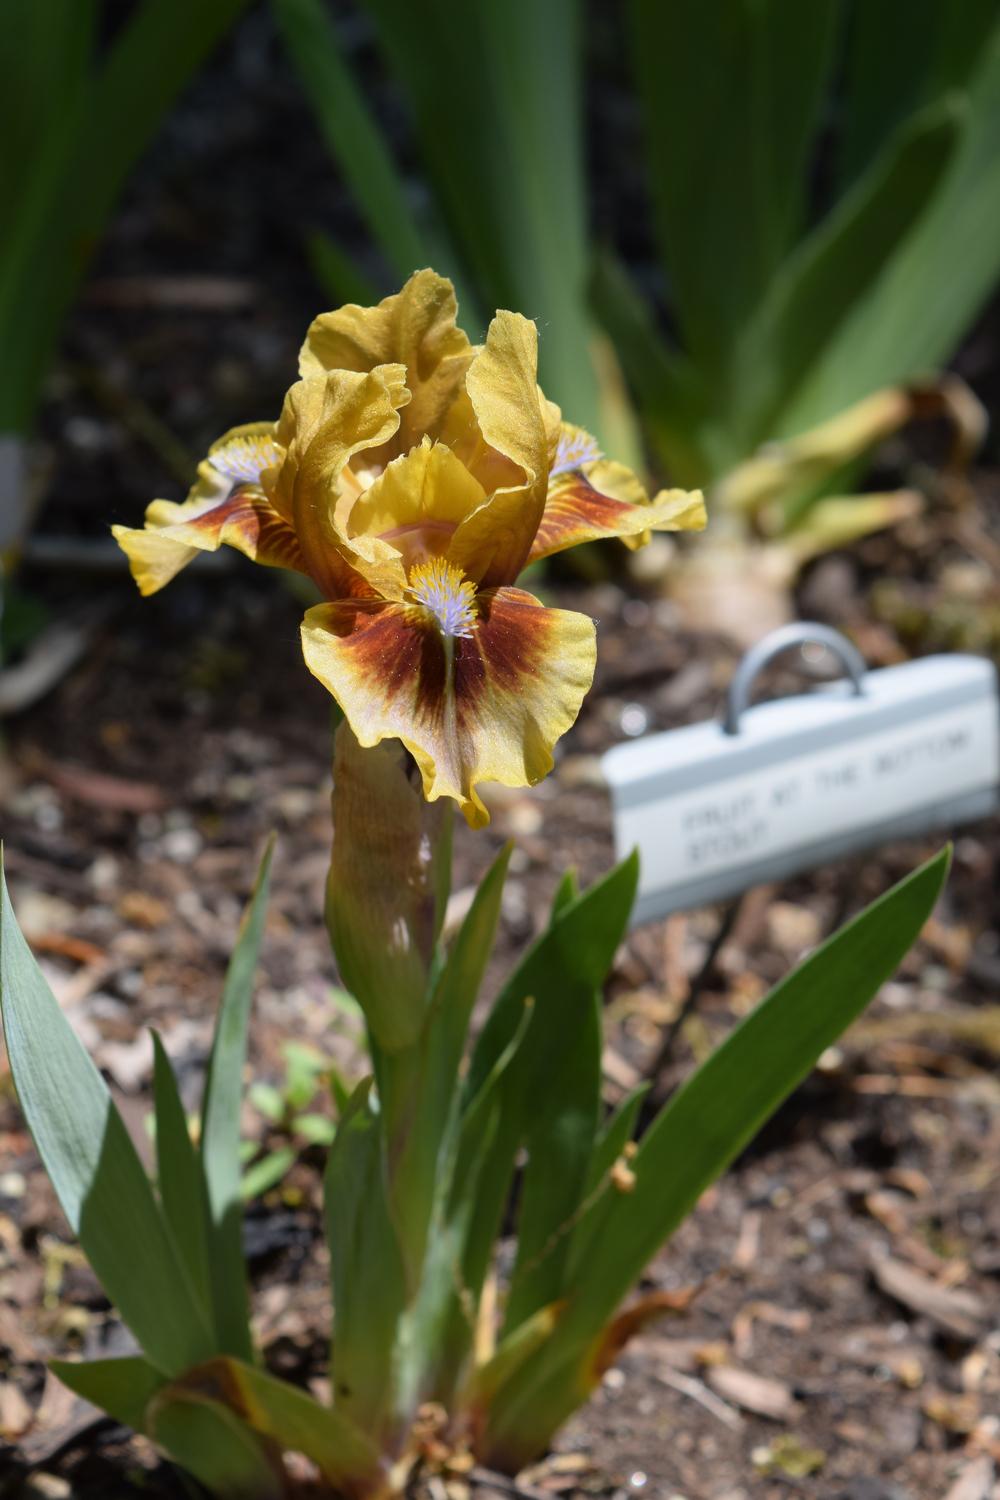 Photo of Standard Dwarf Bearded Iris (Iris 'Eye of Newt') uploaded by Dachsylady86